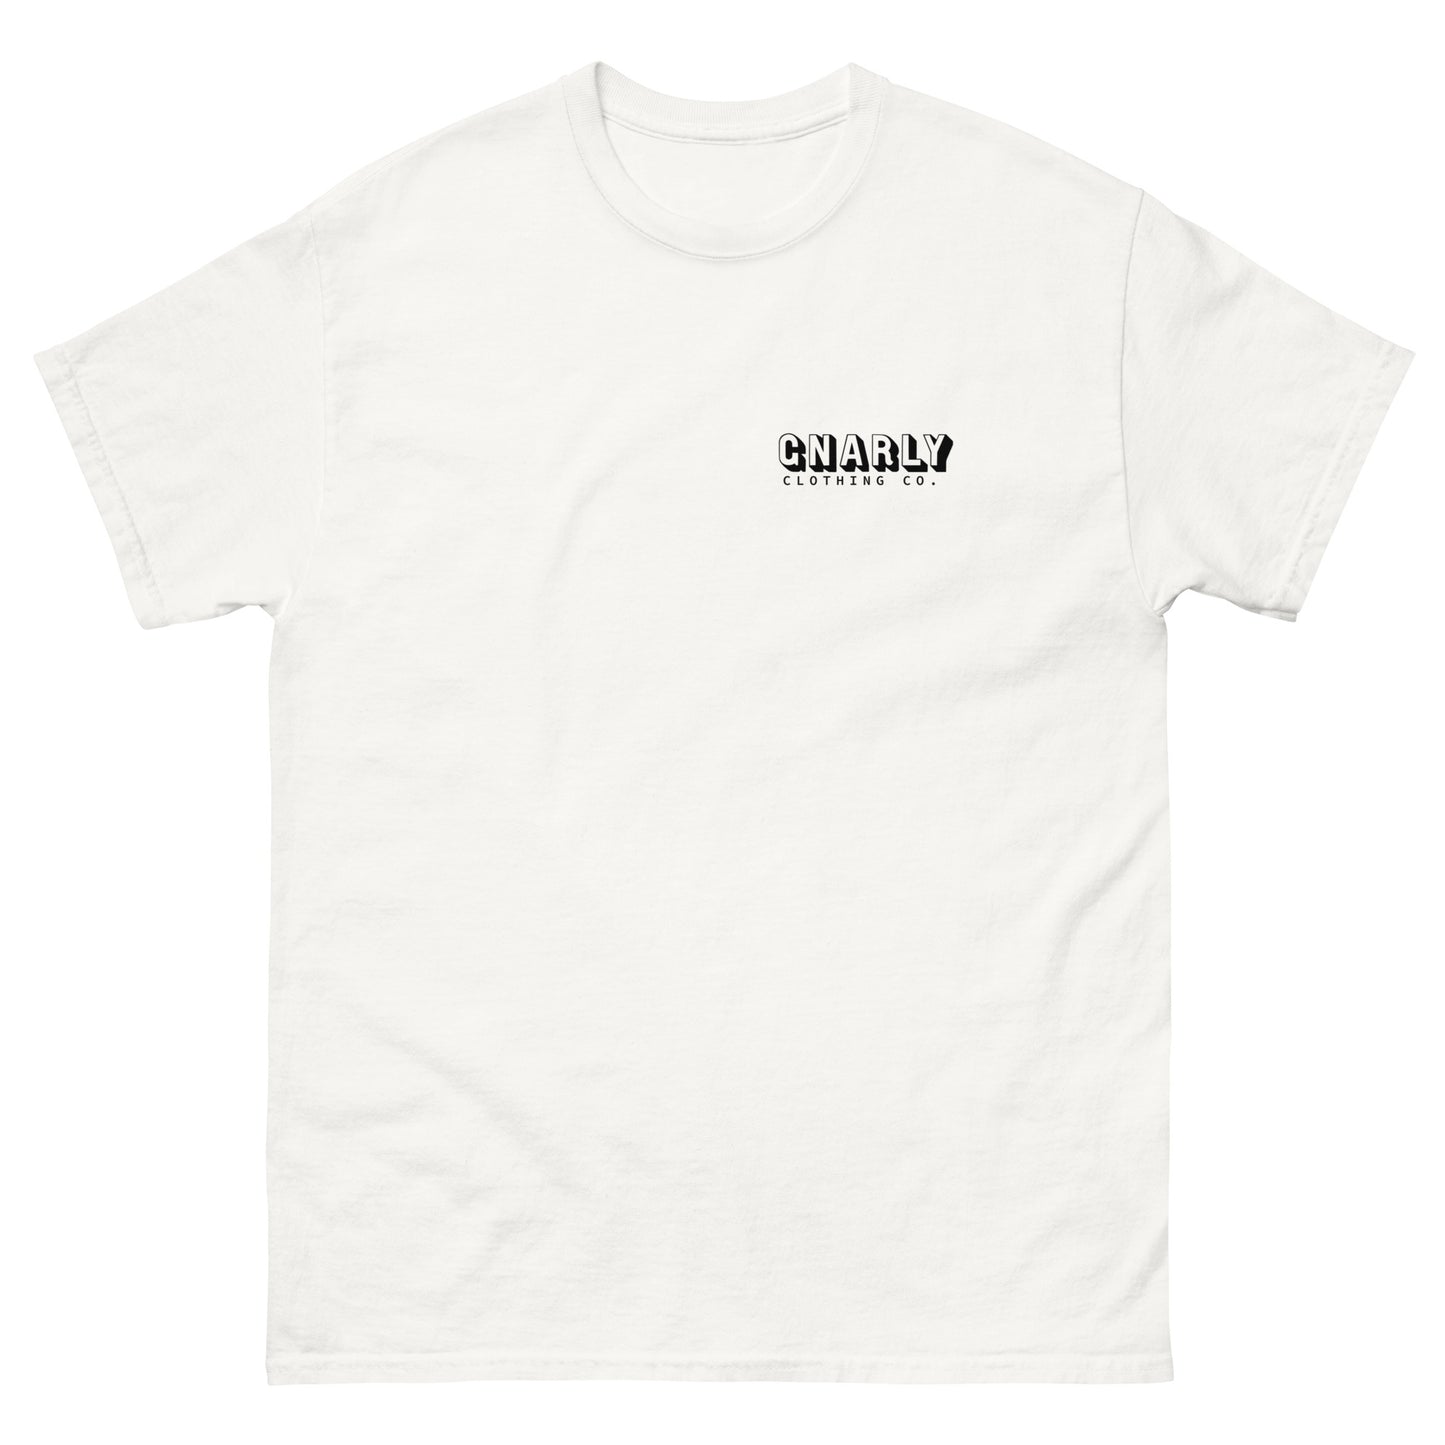 Unisex Menace T-Shirt